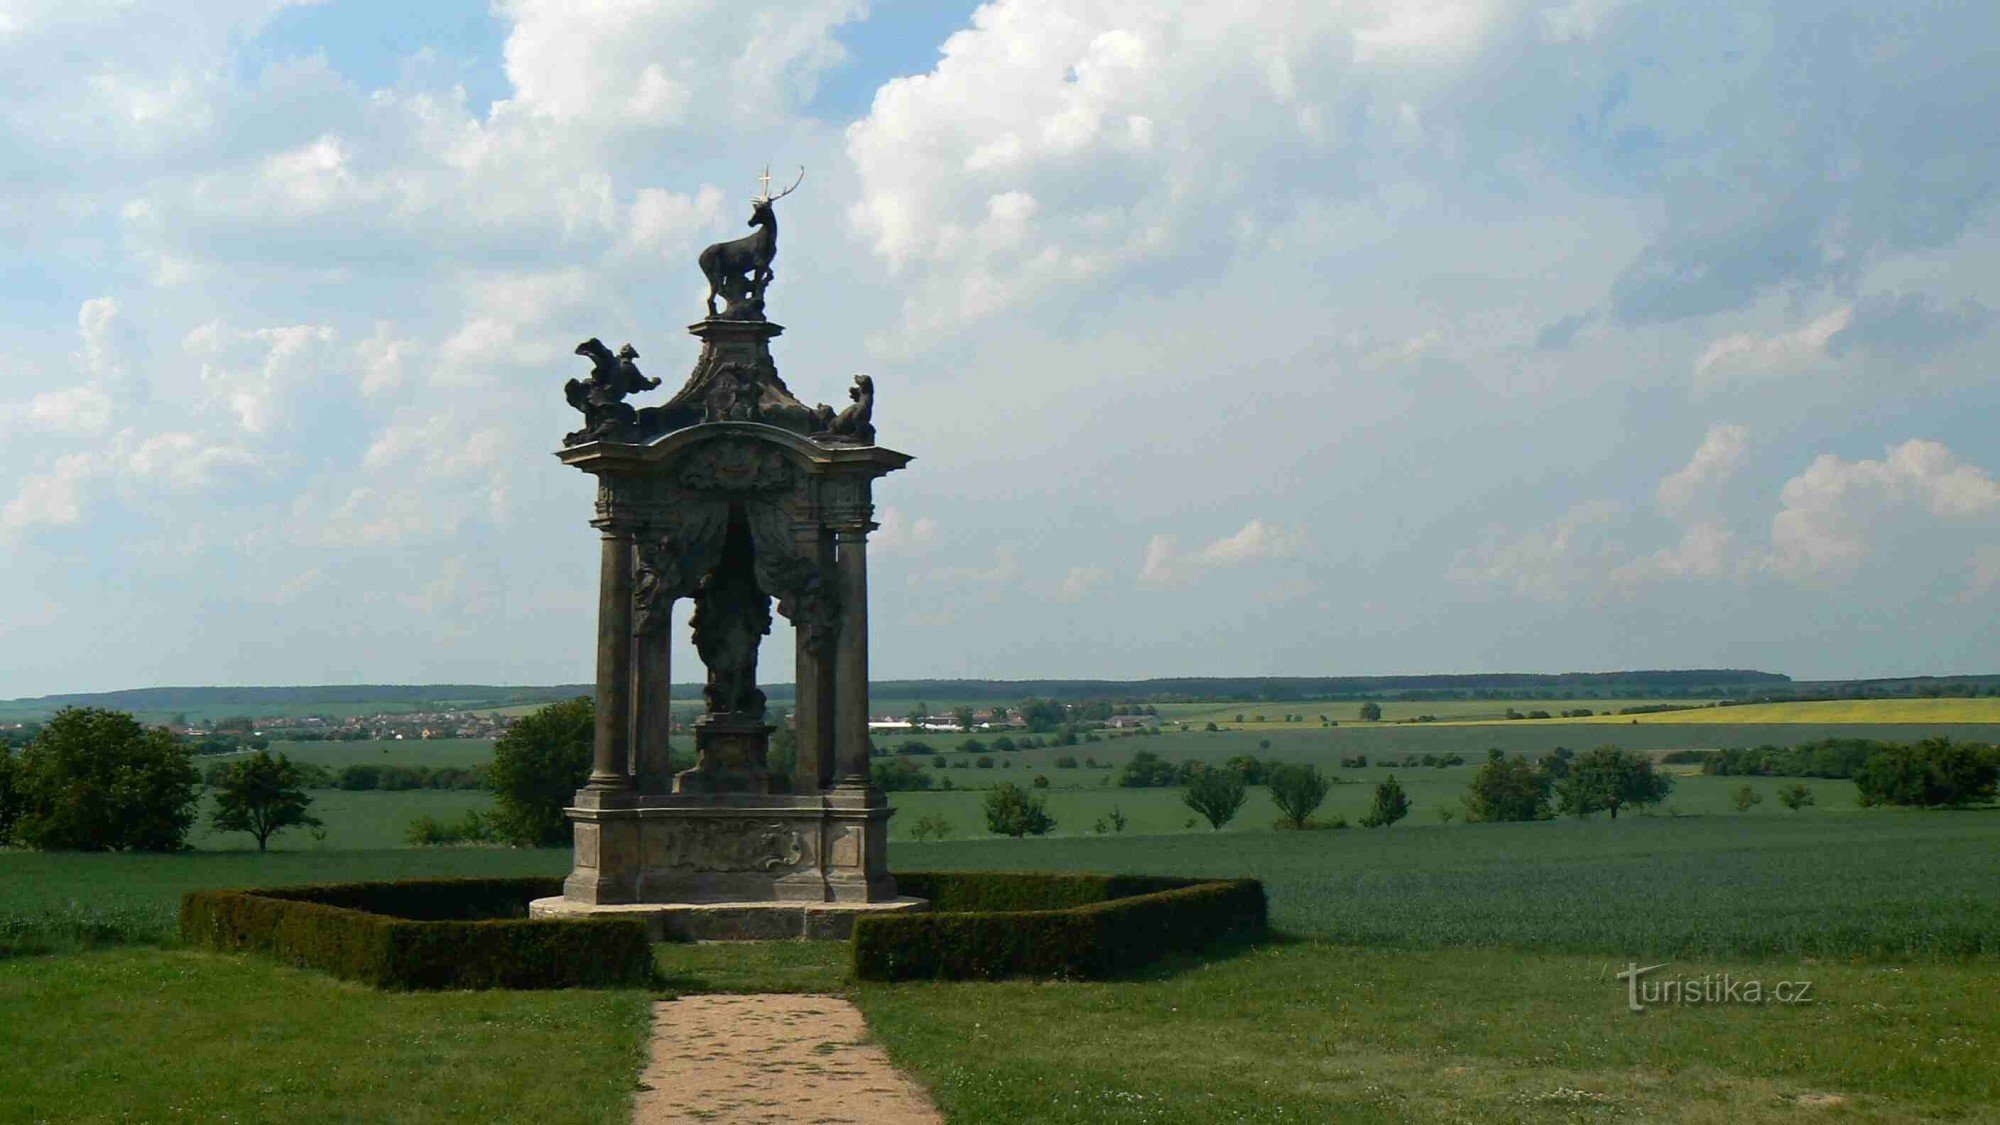 Monument à l'empereur Charles VI.